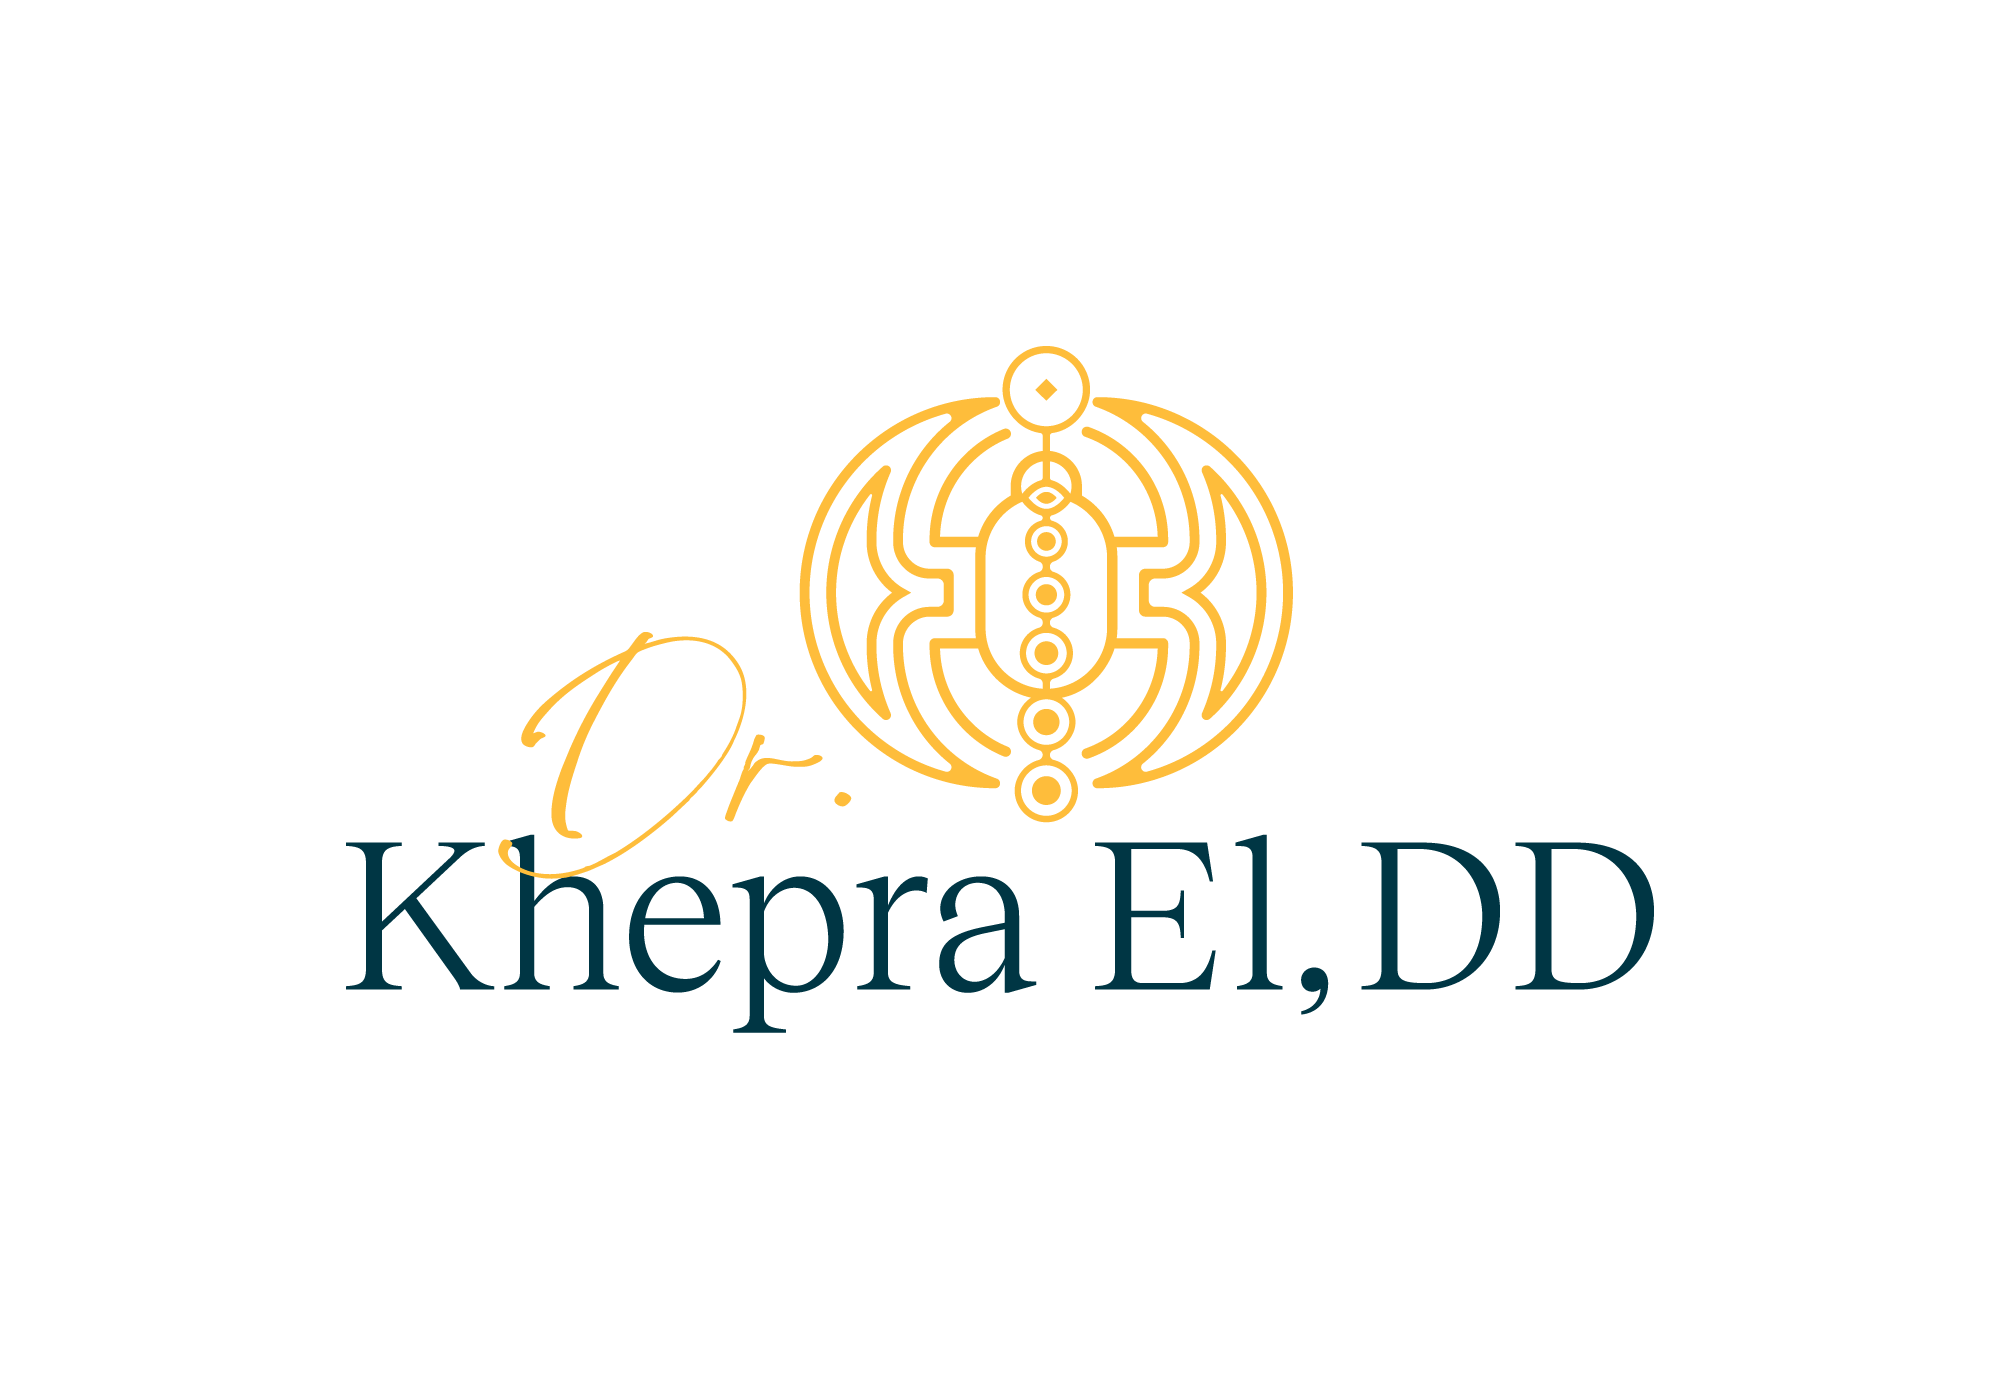 Dr. Khepra El